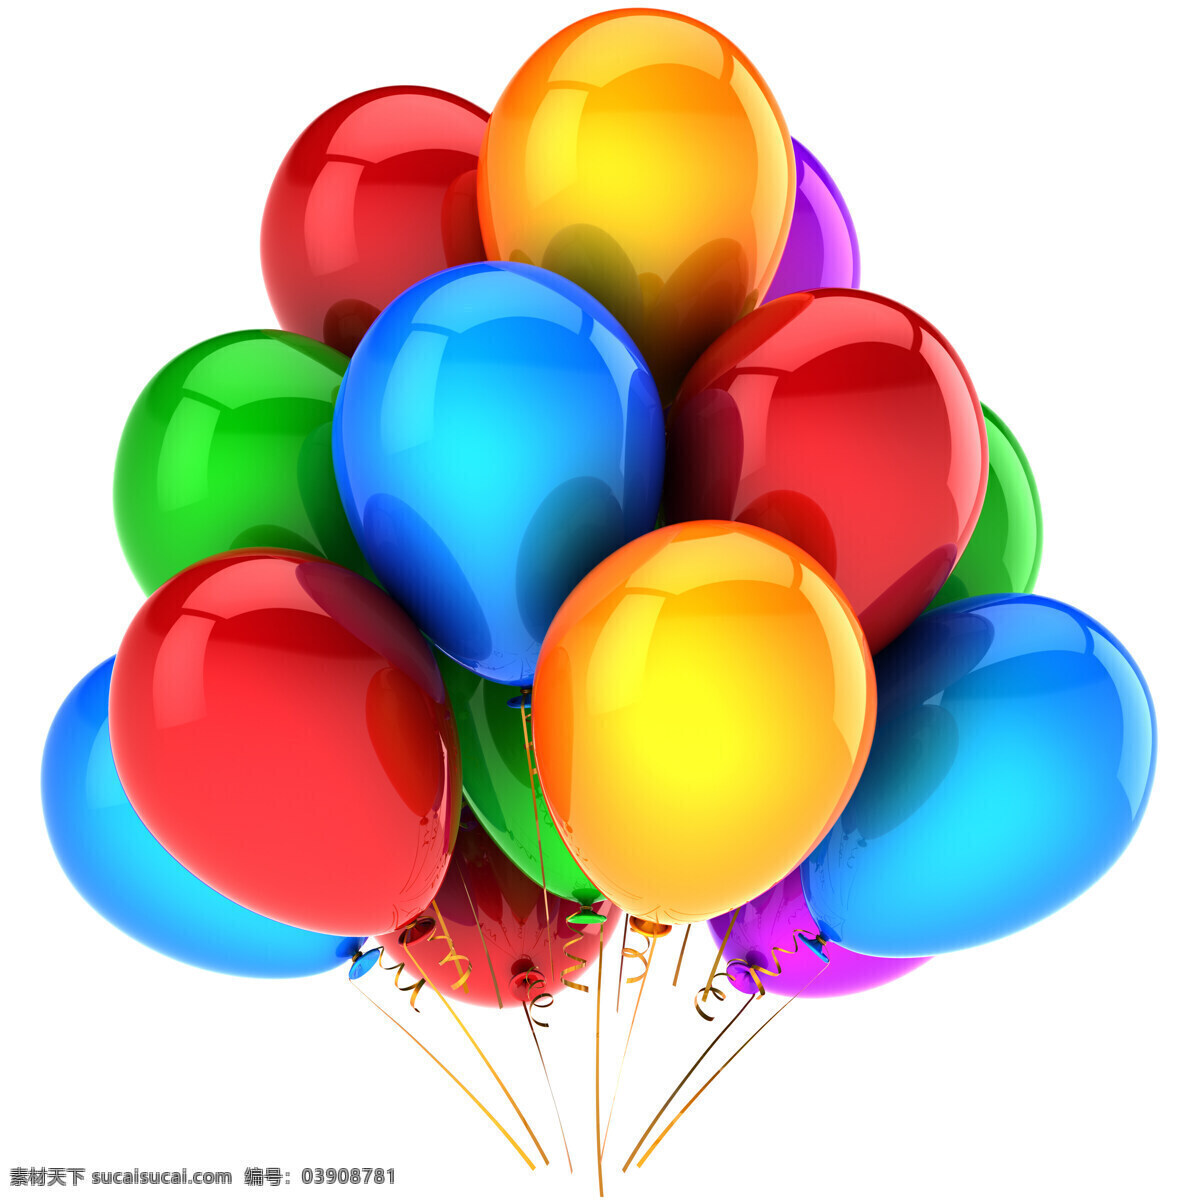 彩虹 气球 彩色 五彩 3d 节日 彩色气球 气球图片 高清气球图片 高清图片 节日庆典 生活百科